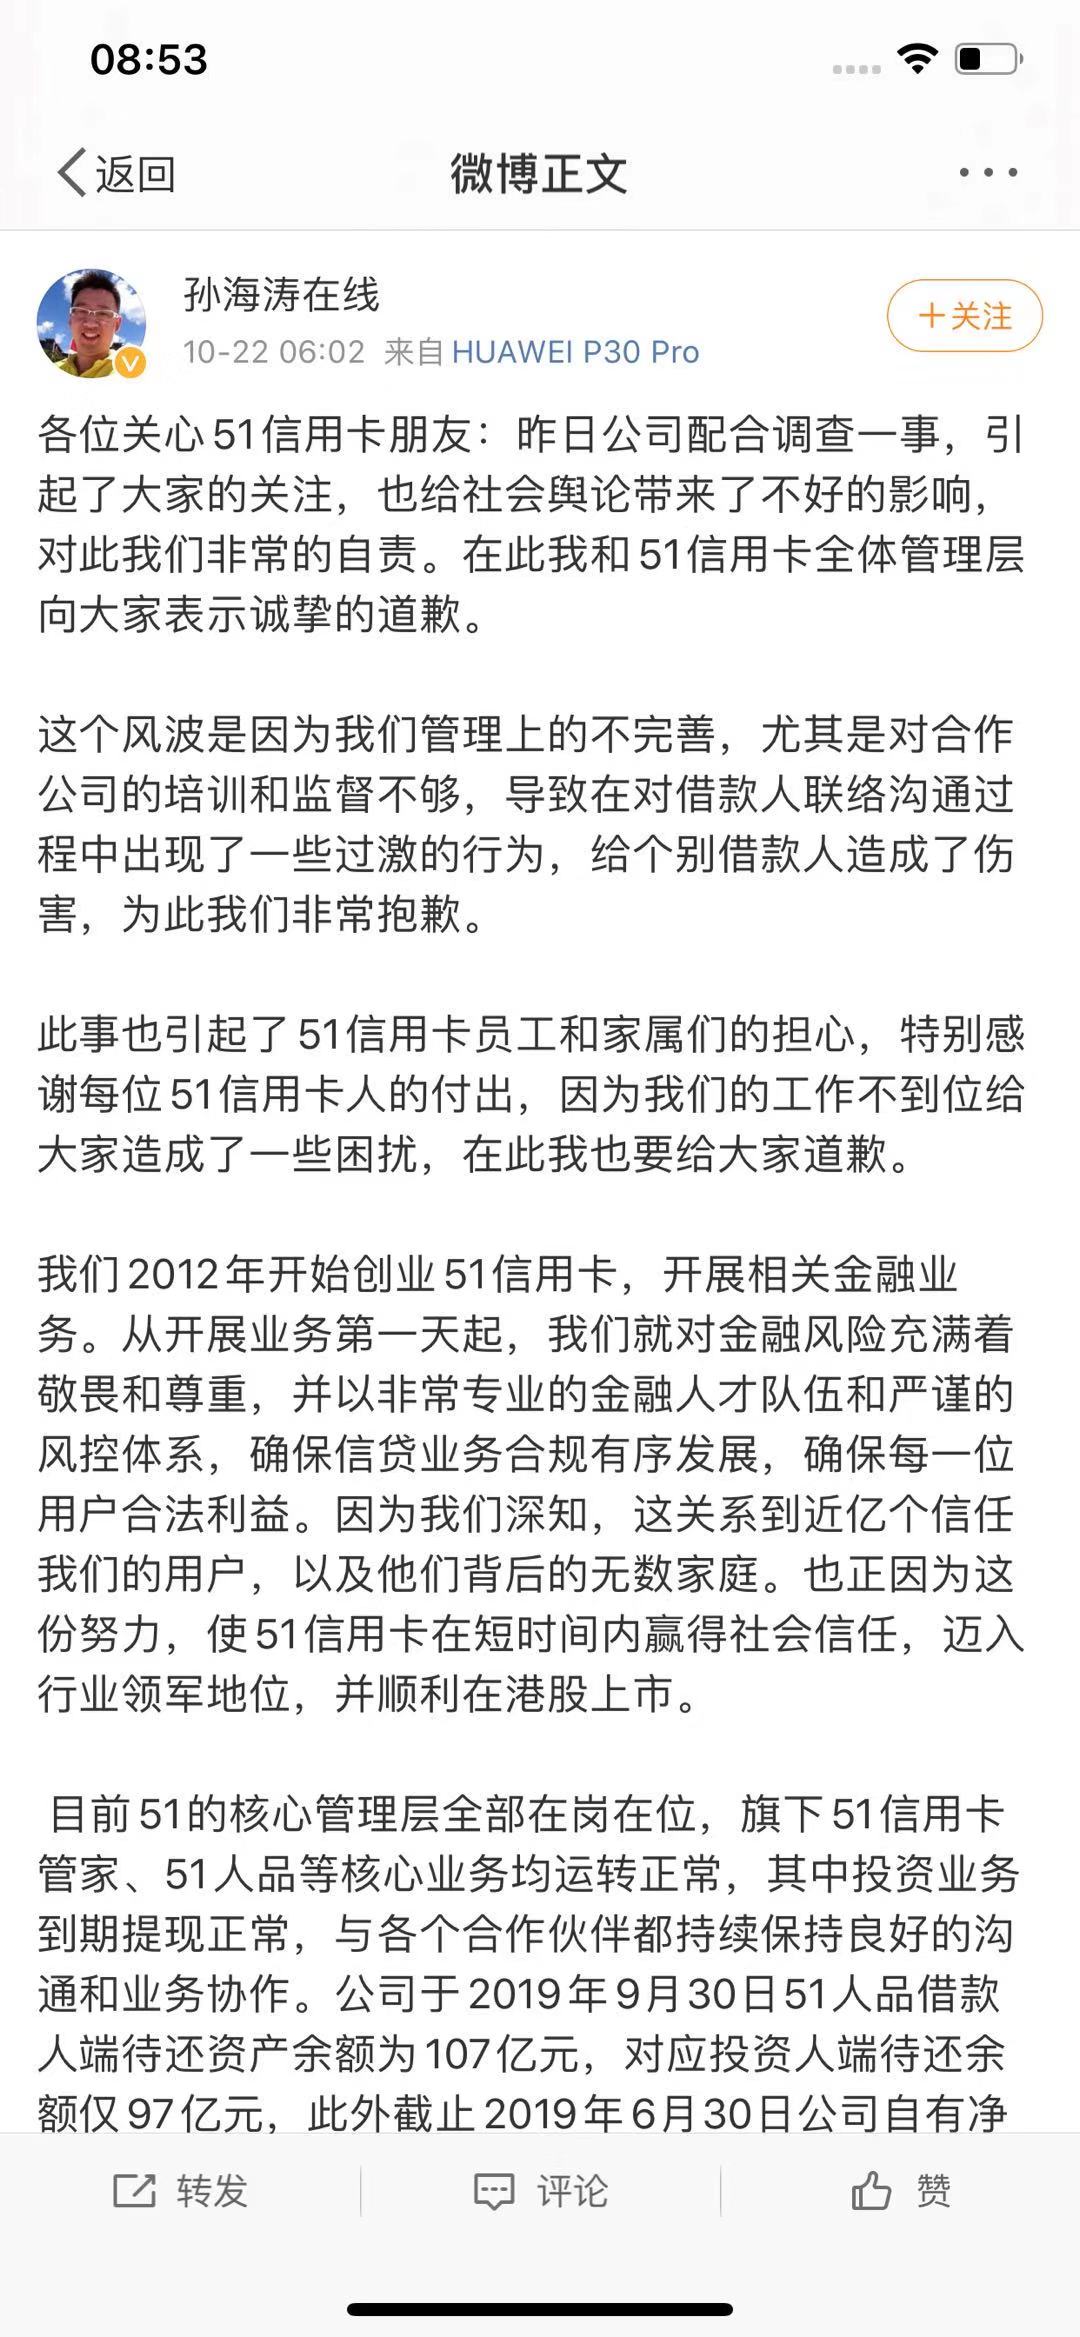 51信用卡孙海涛微博致歉 对合作公司的培训和监督不够